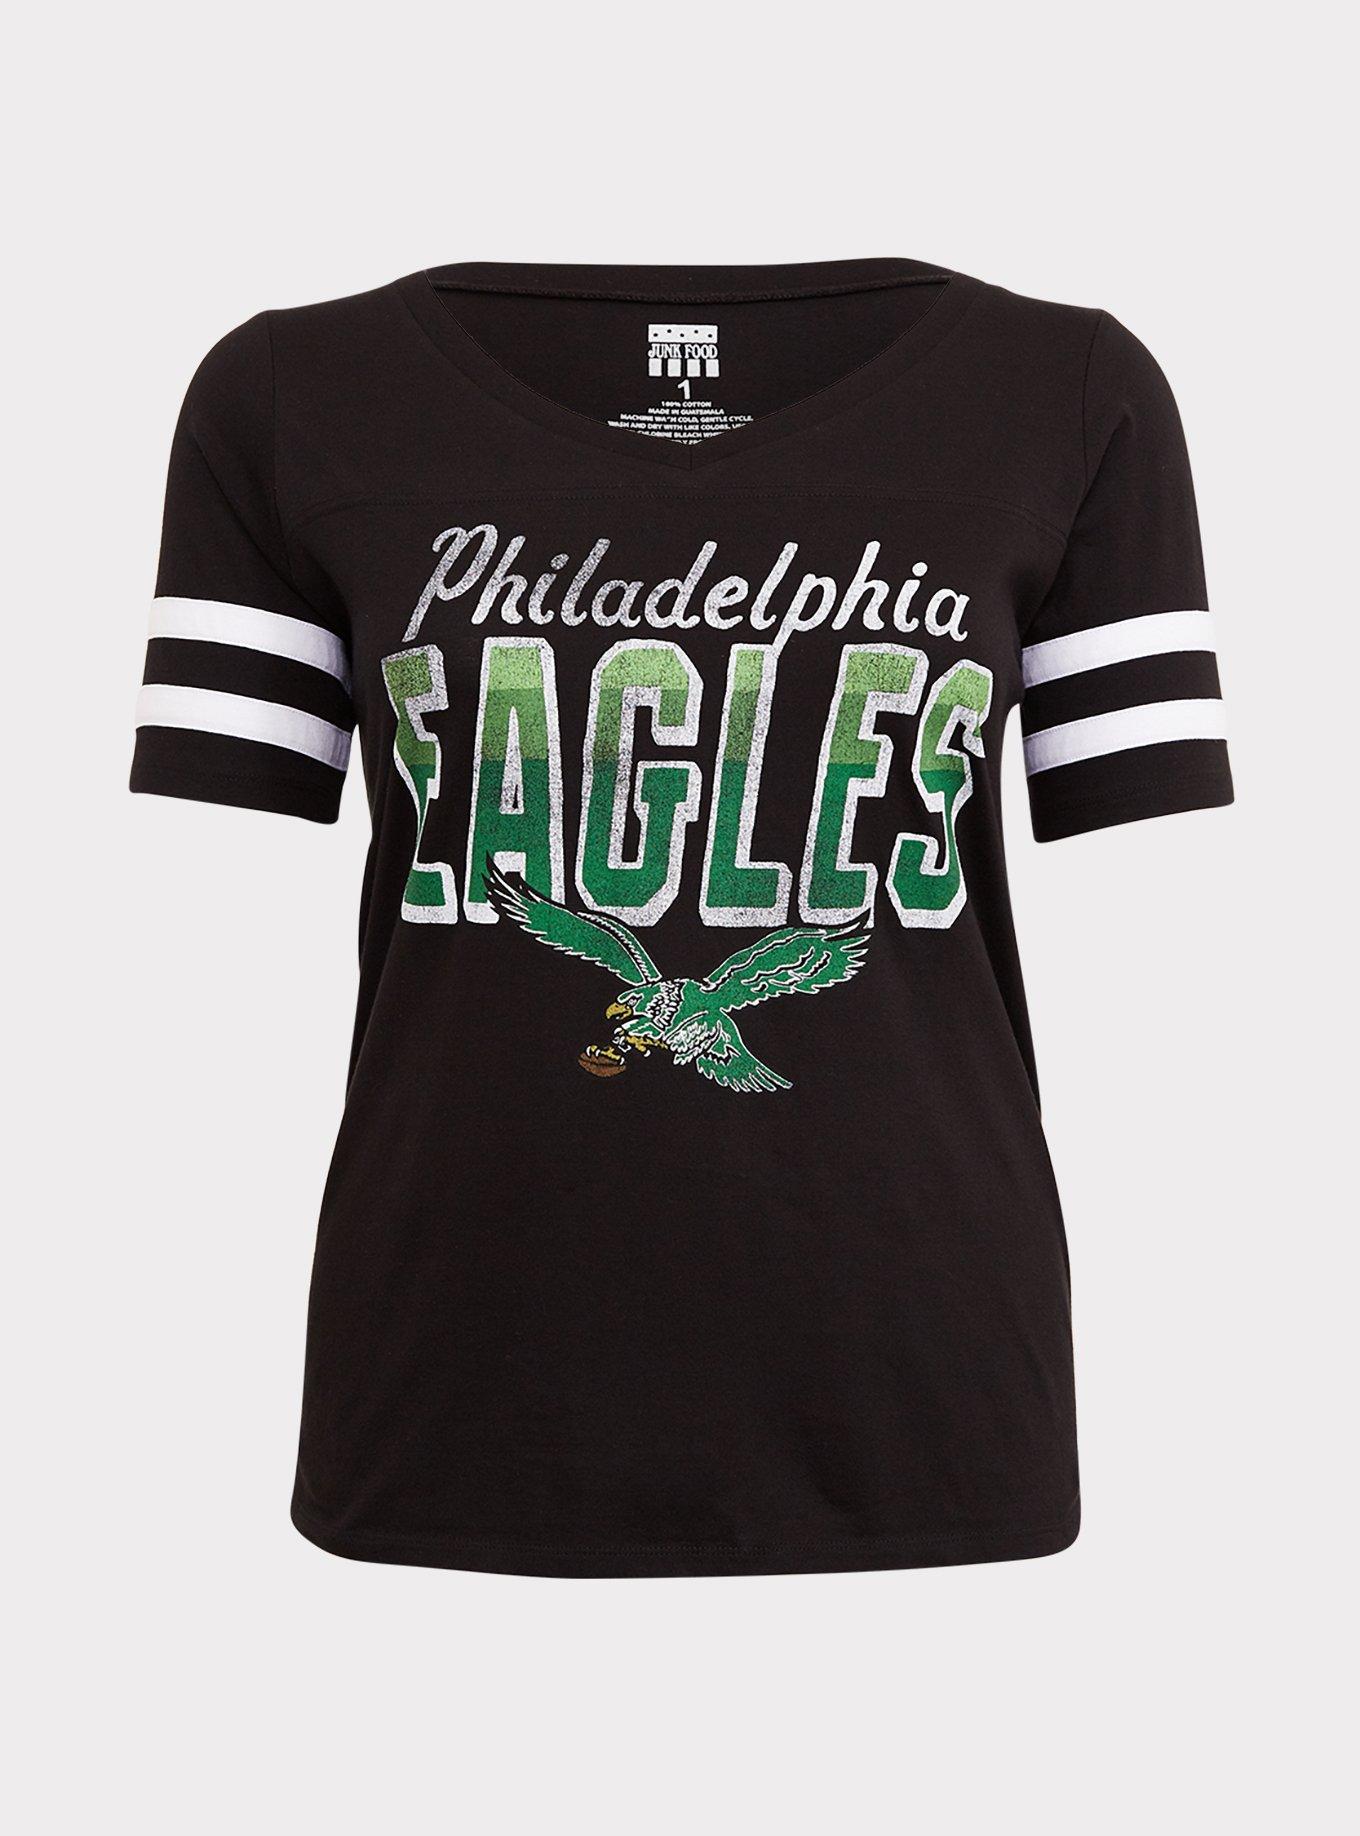 Philadelphia Eagles Women Short Sleeve Tops Summer Casual Blouse V